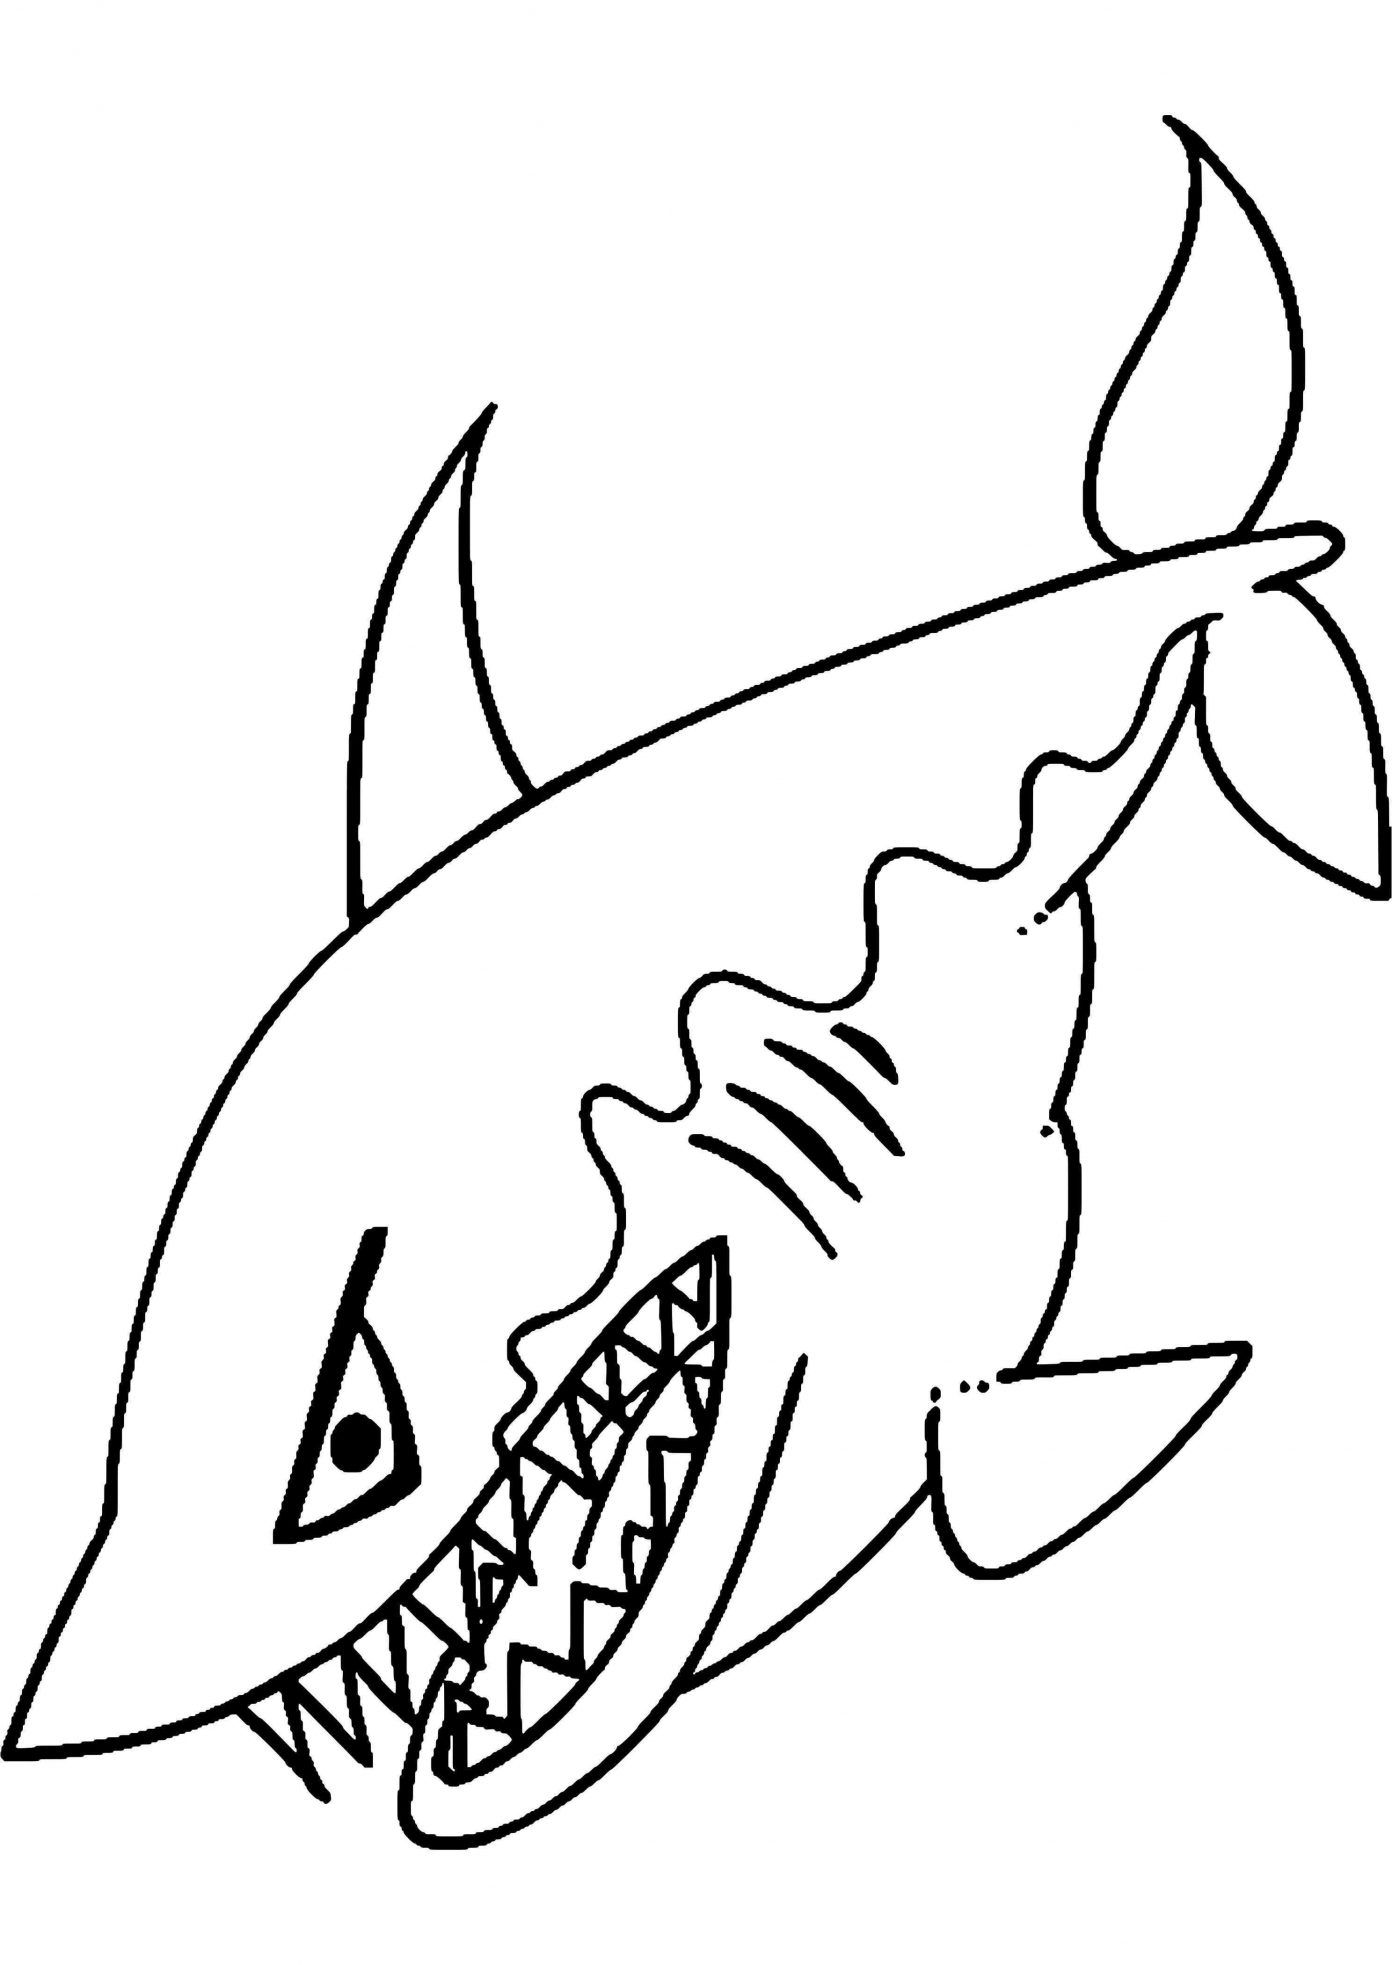 Tranh tô màu con cá mập có hàm răng sắc nhọn